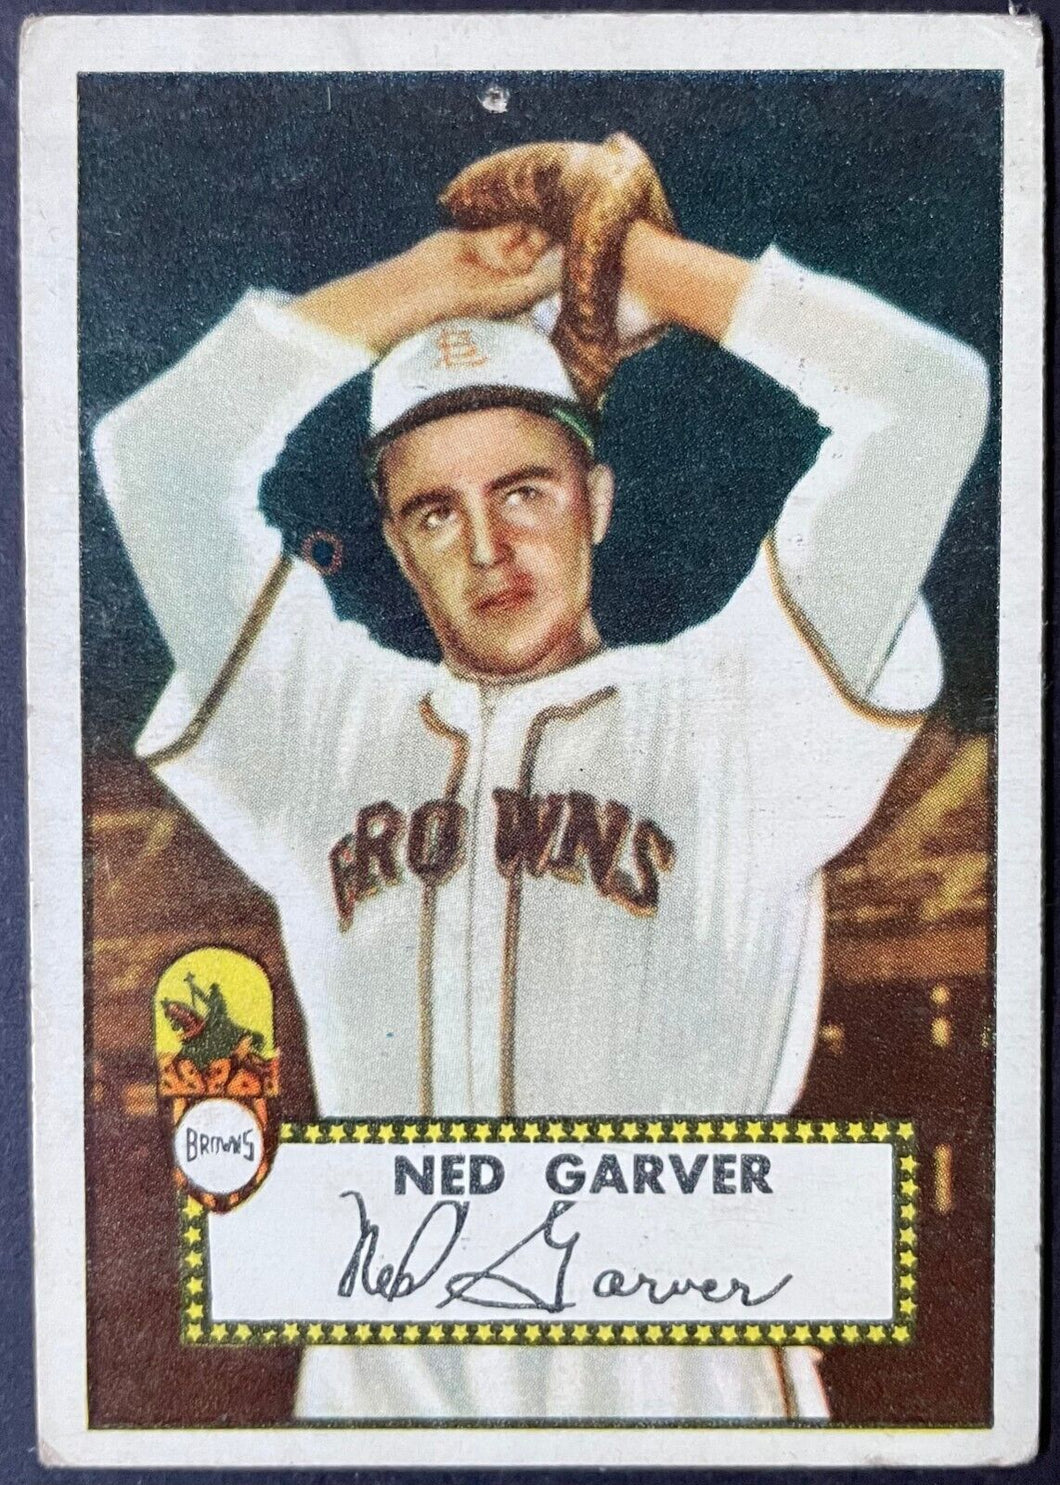 1952 Topps Baseball Ned Garver #212 St. Louis Browns MLB Card Vintage